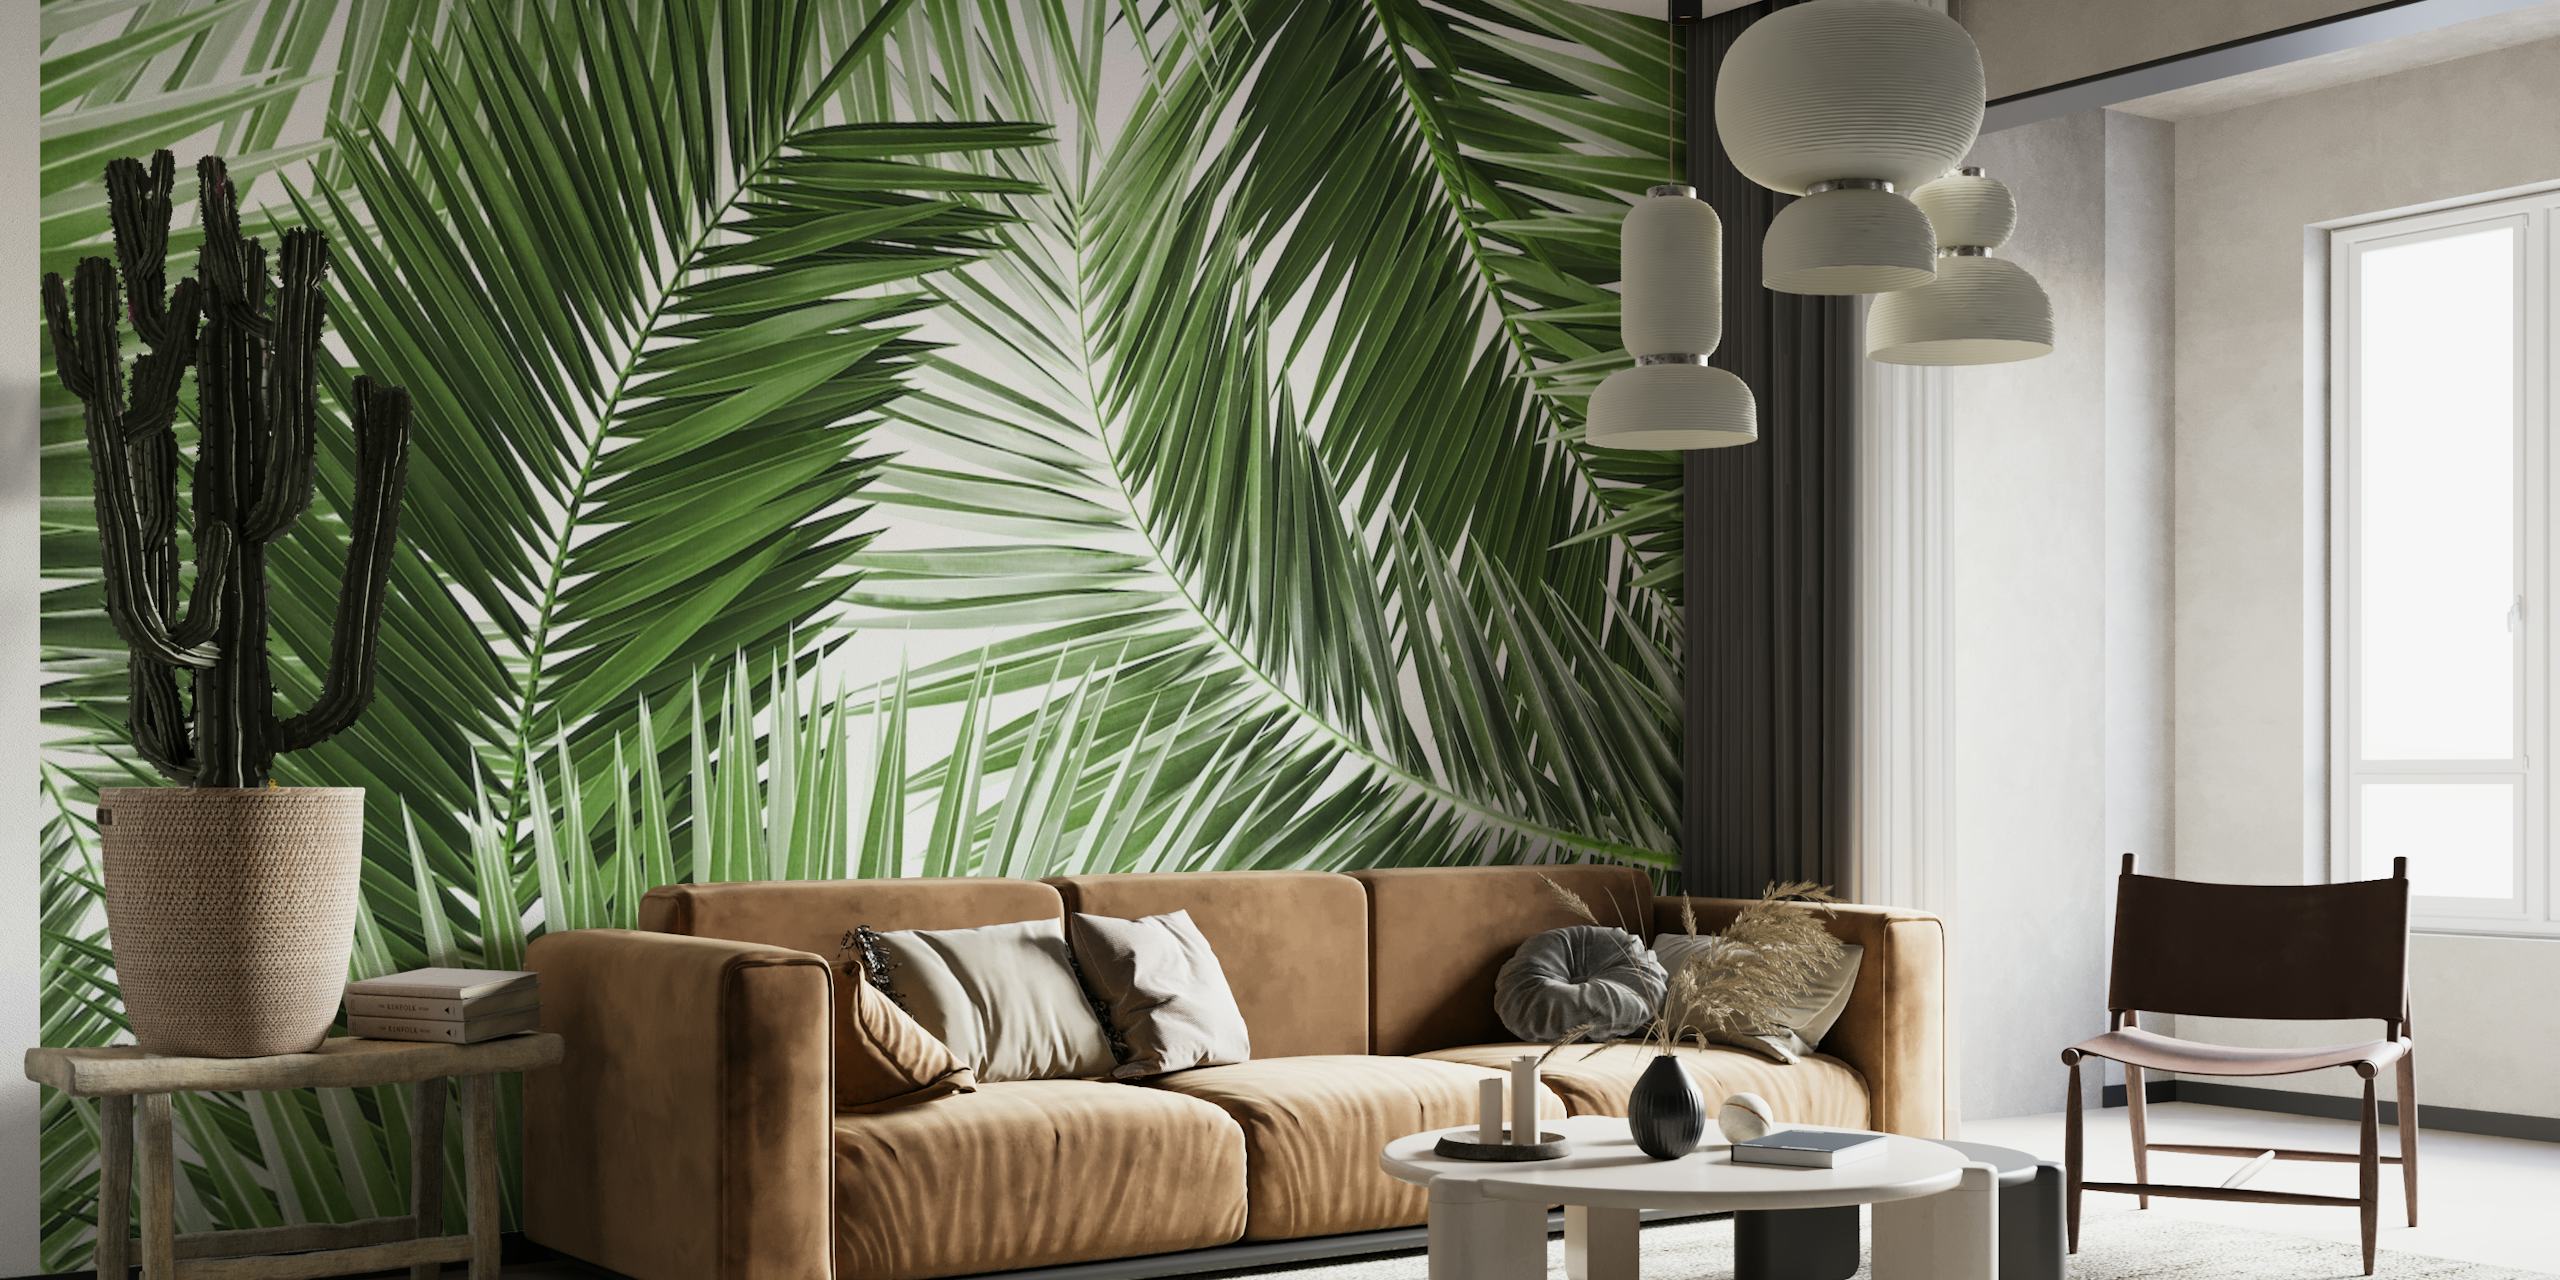 Rehevän vihreä palmunlehtikuvioinen seinämaalaus sisustukseen